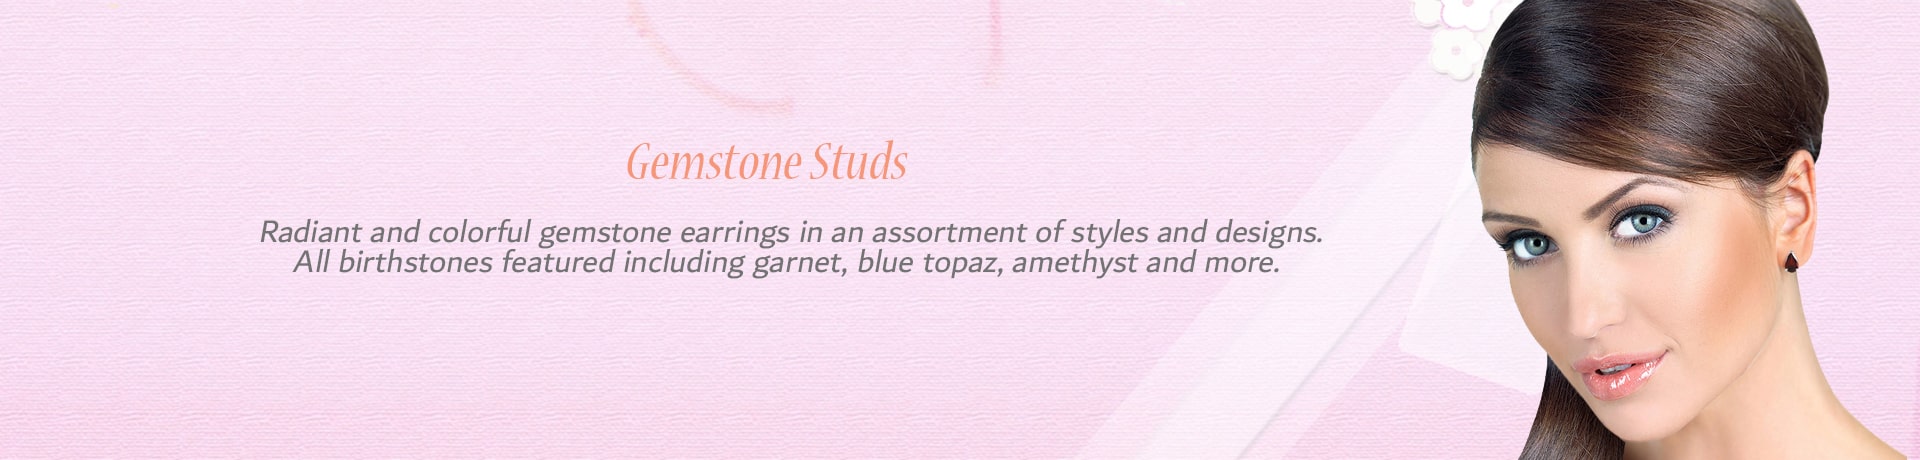 Gemstone Studs